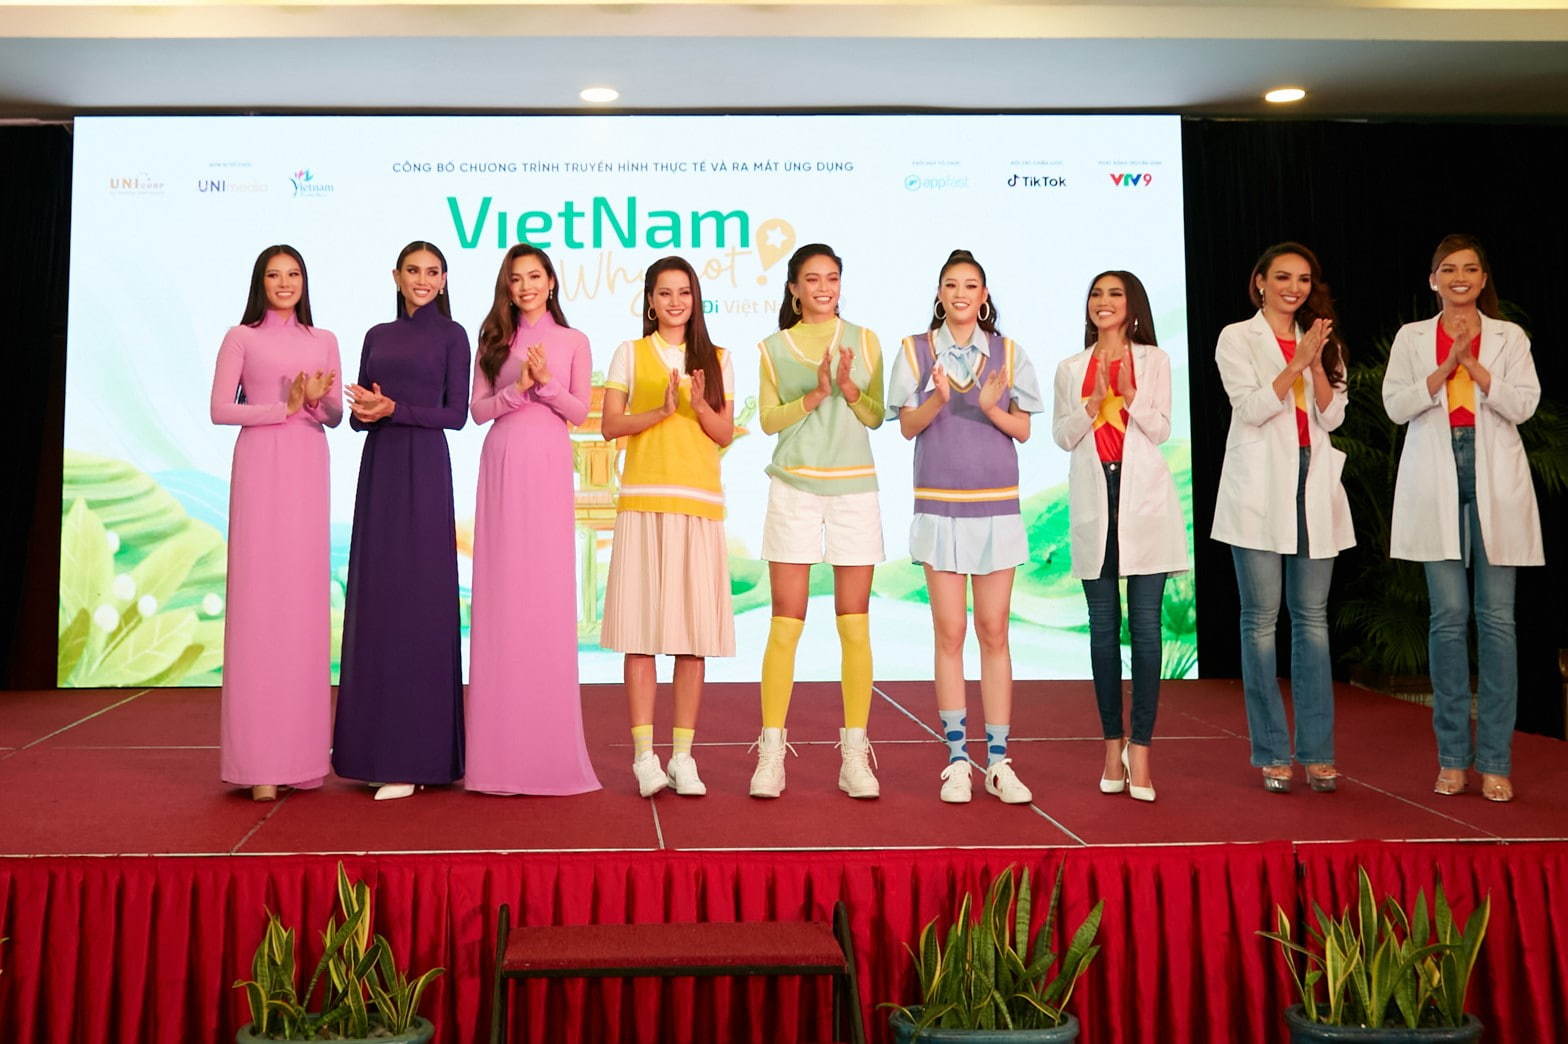 'Đi Việt Nam Đi': Ý tưởng sáng tạo trong mục tiêu kích cầu ngành du lịch